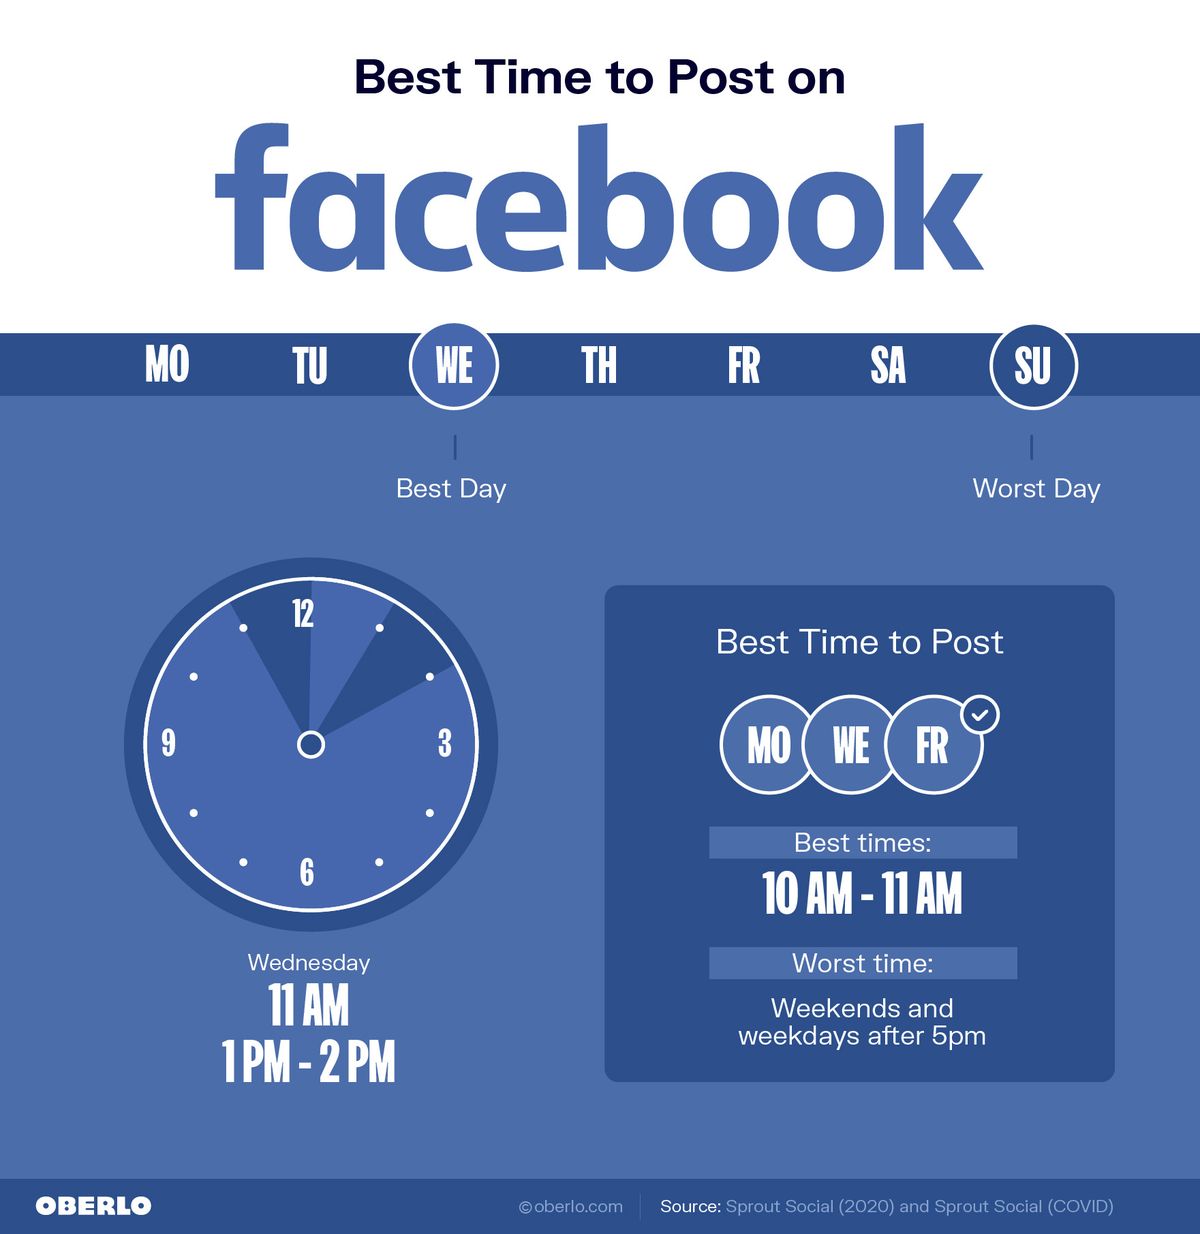 फेसबुक पर पोस्ट करने का सबसे अच्छा समय